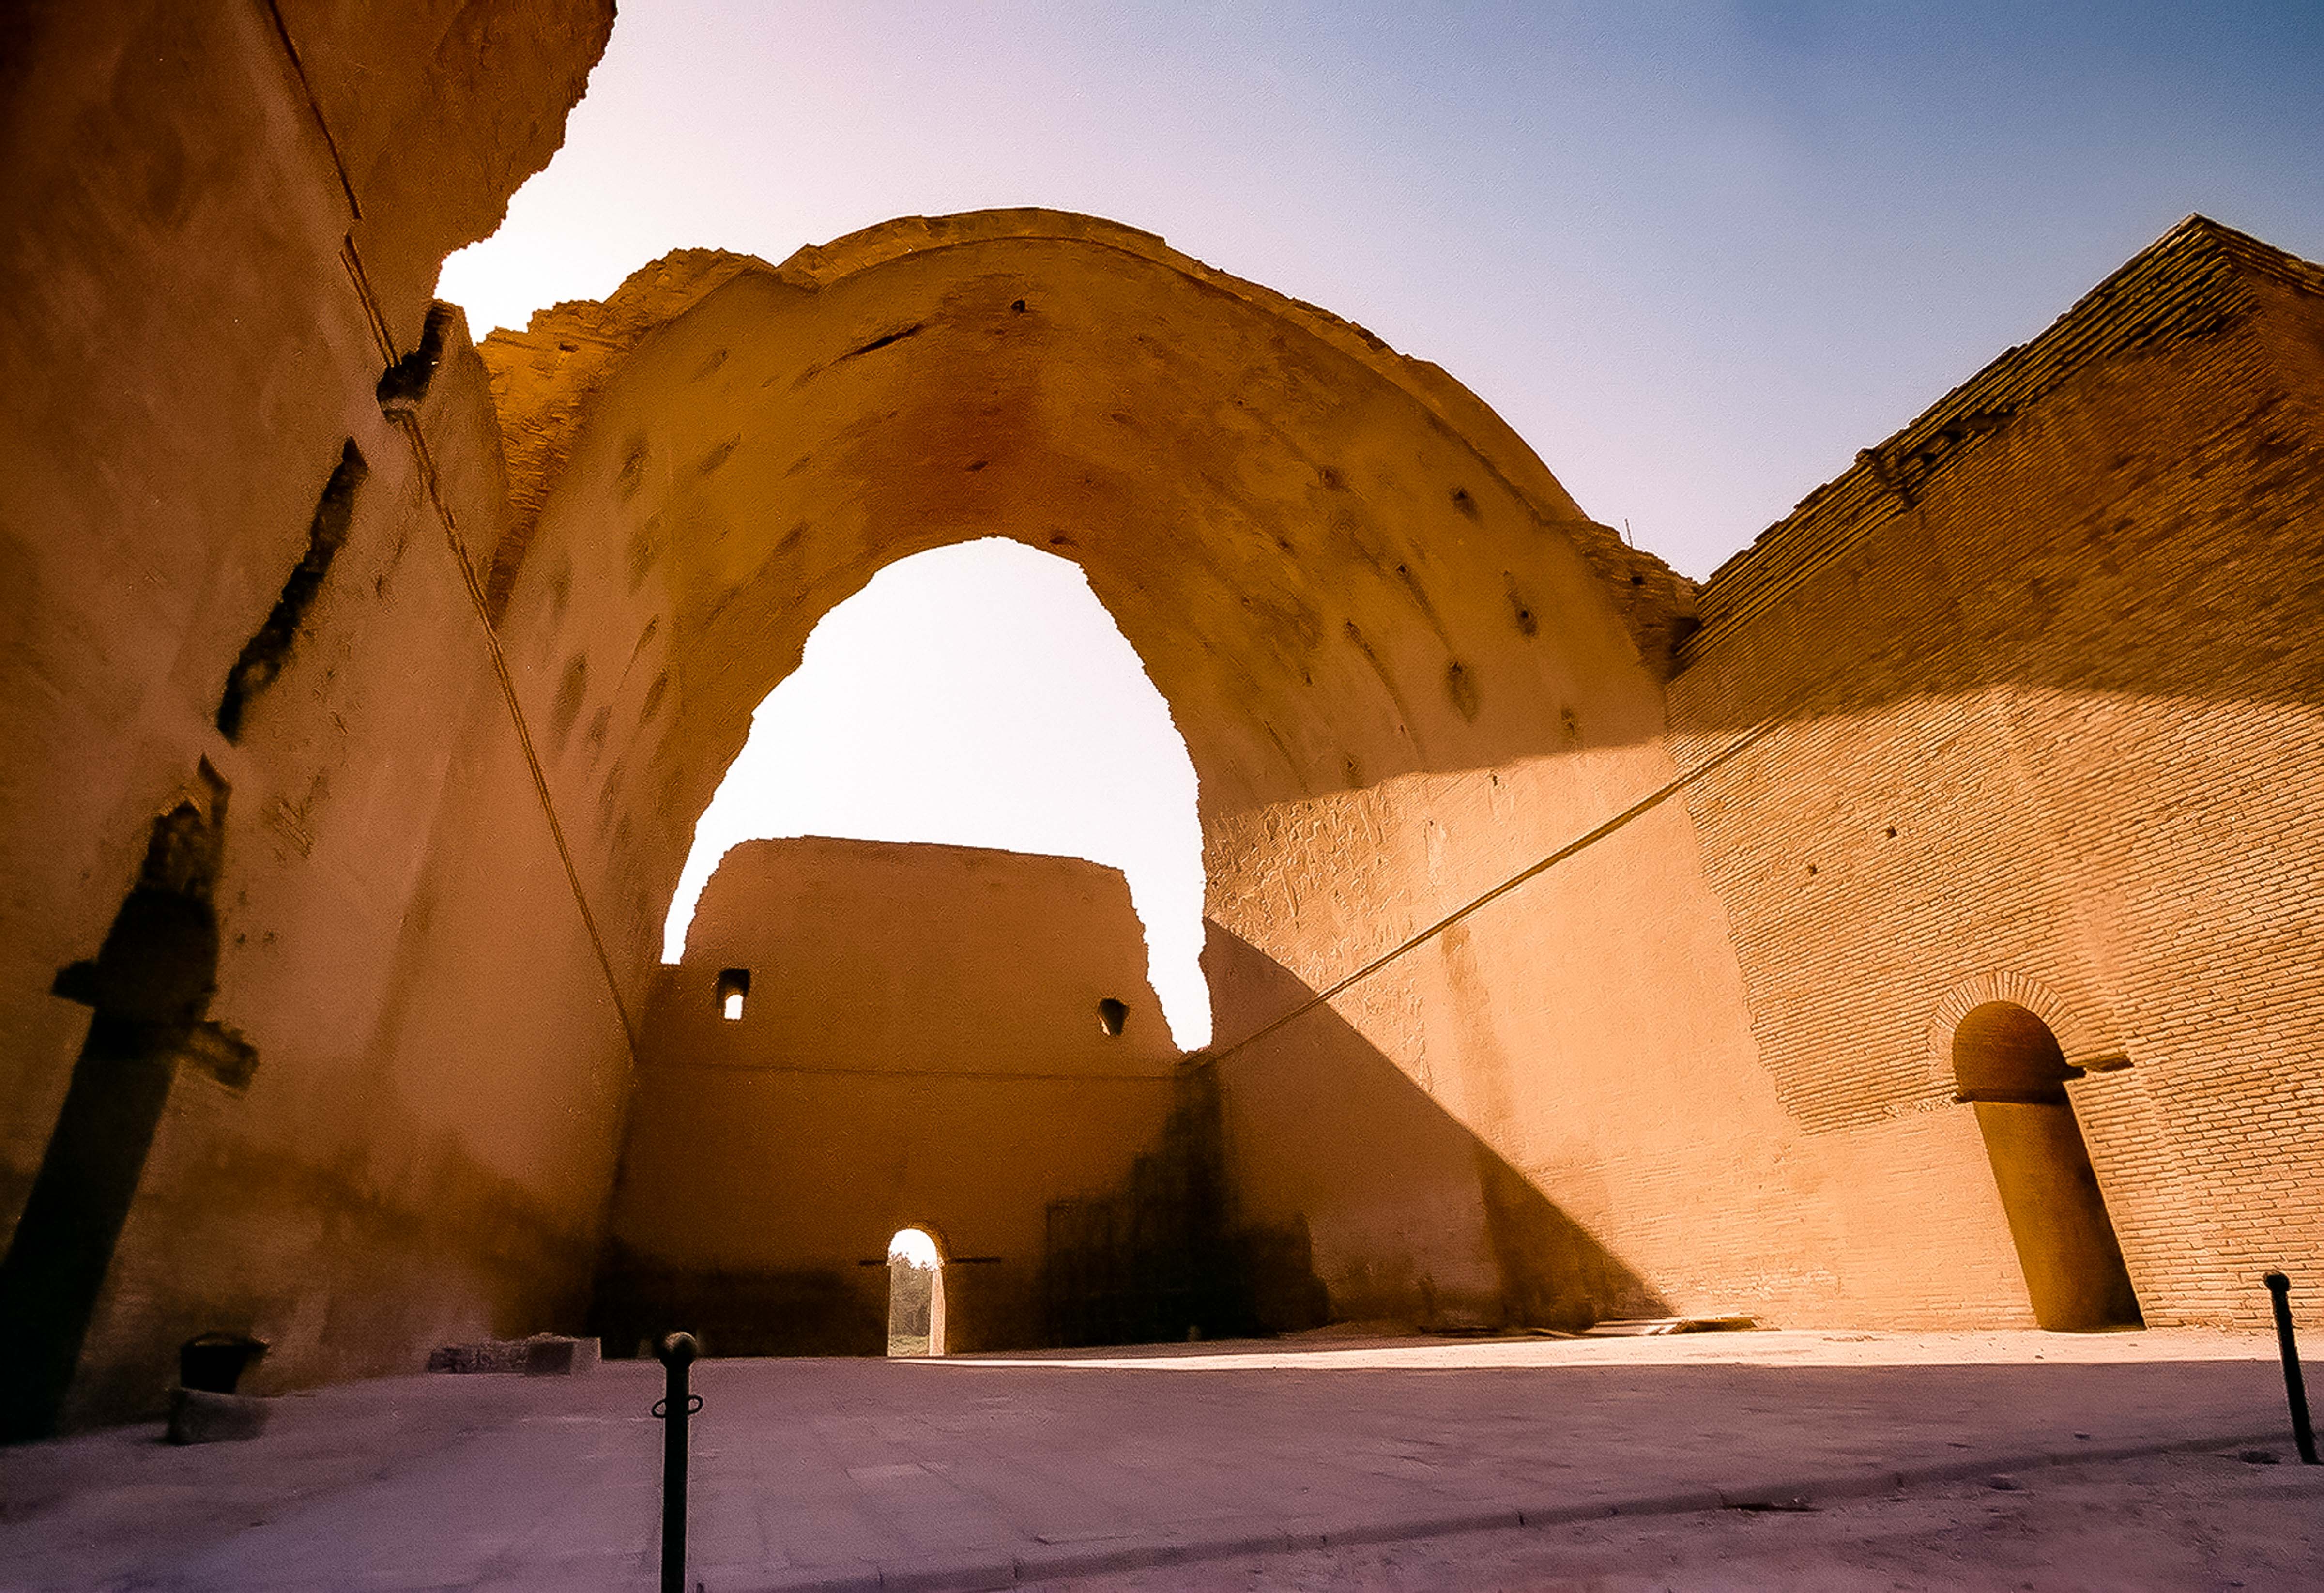 Iraq, Ctesiphon Arch, 2002